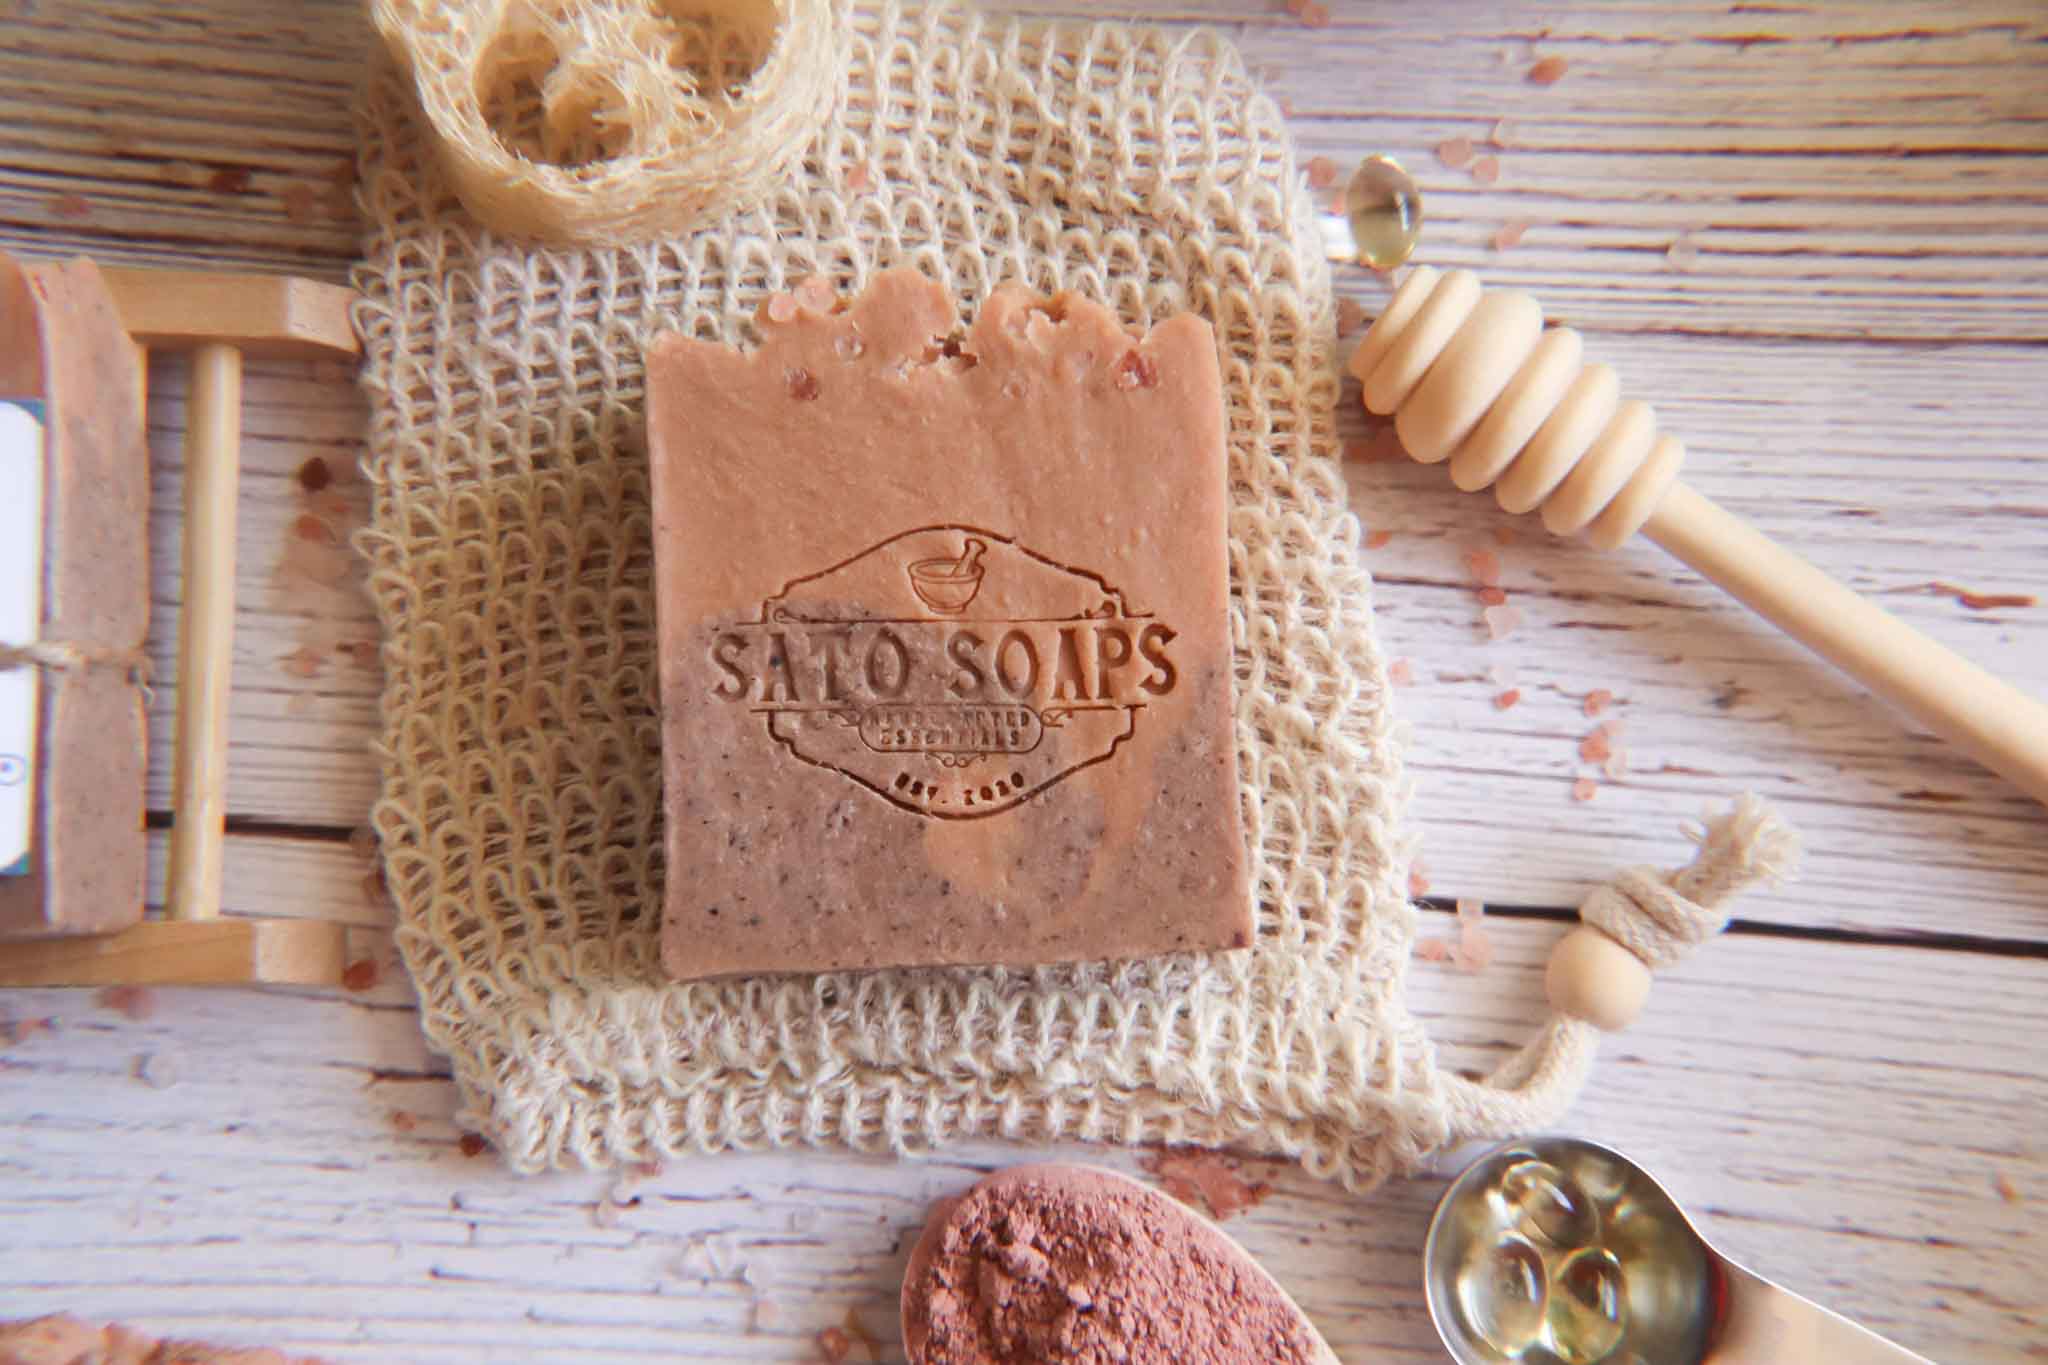 Sunset Beach Bar Soap with Himalayan Pink Salt, Rose Clay, Shea Butter, Vitamin E and Arizona Sun